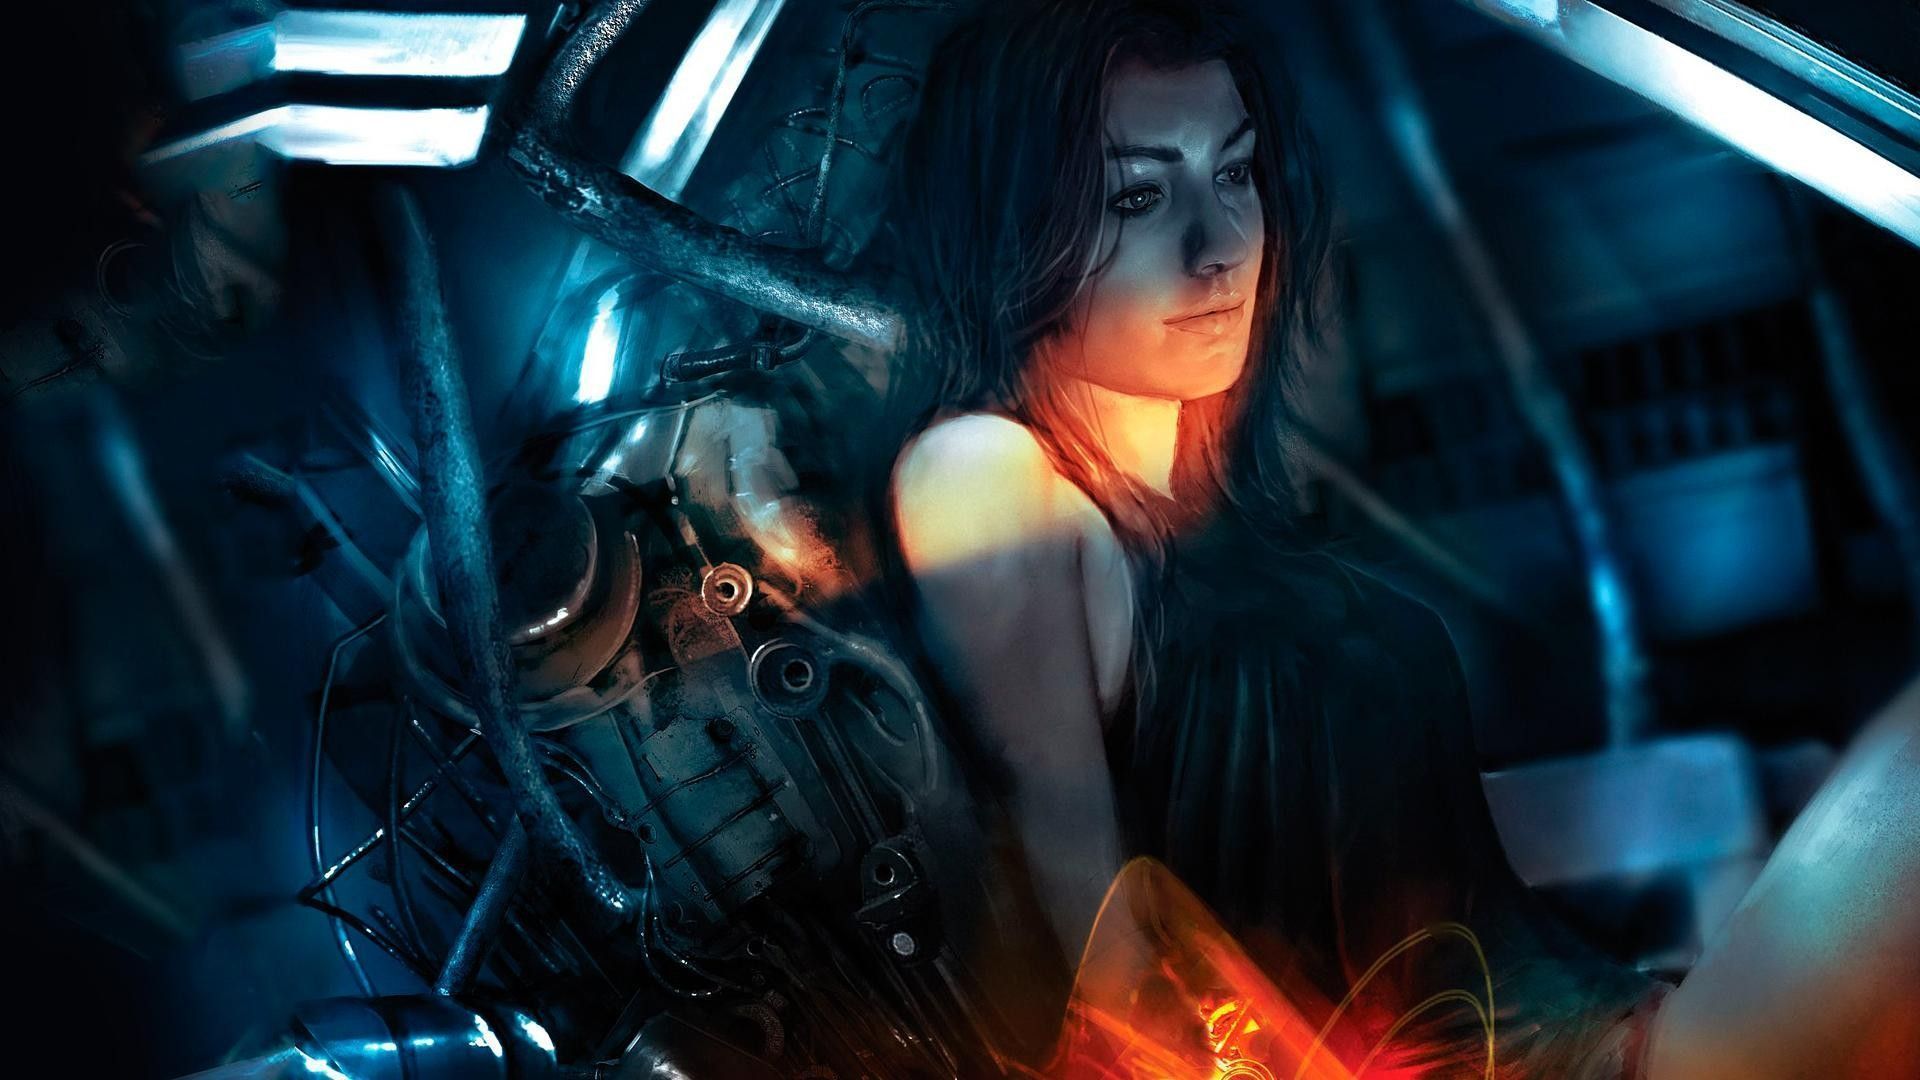 Mass Effect 3 Computer Wallpapers, Desktop Backgrounds | 1920x1080 ...